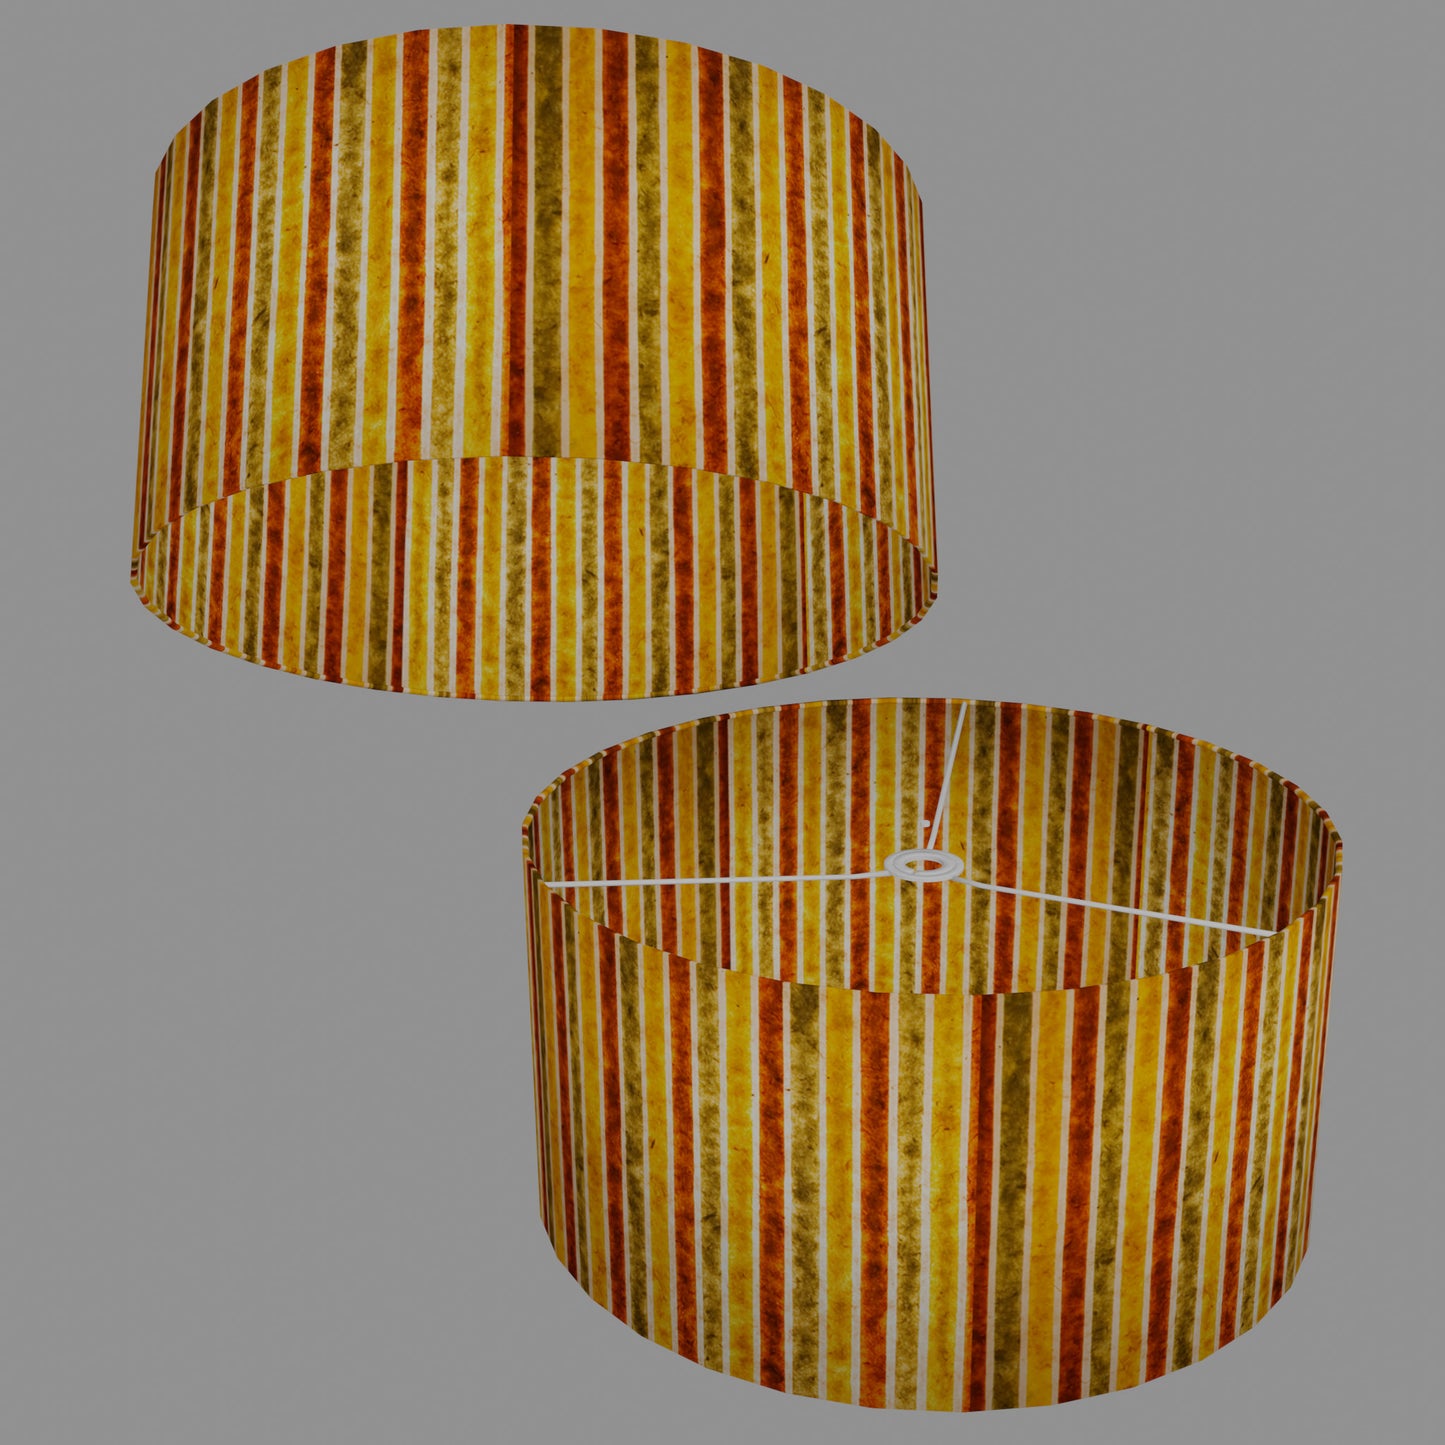 Drum Lamp Shade - P06 - Batik Stripes Autumn, 50cm(d) x 25cm(h)